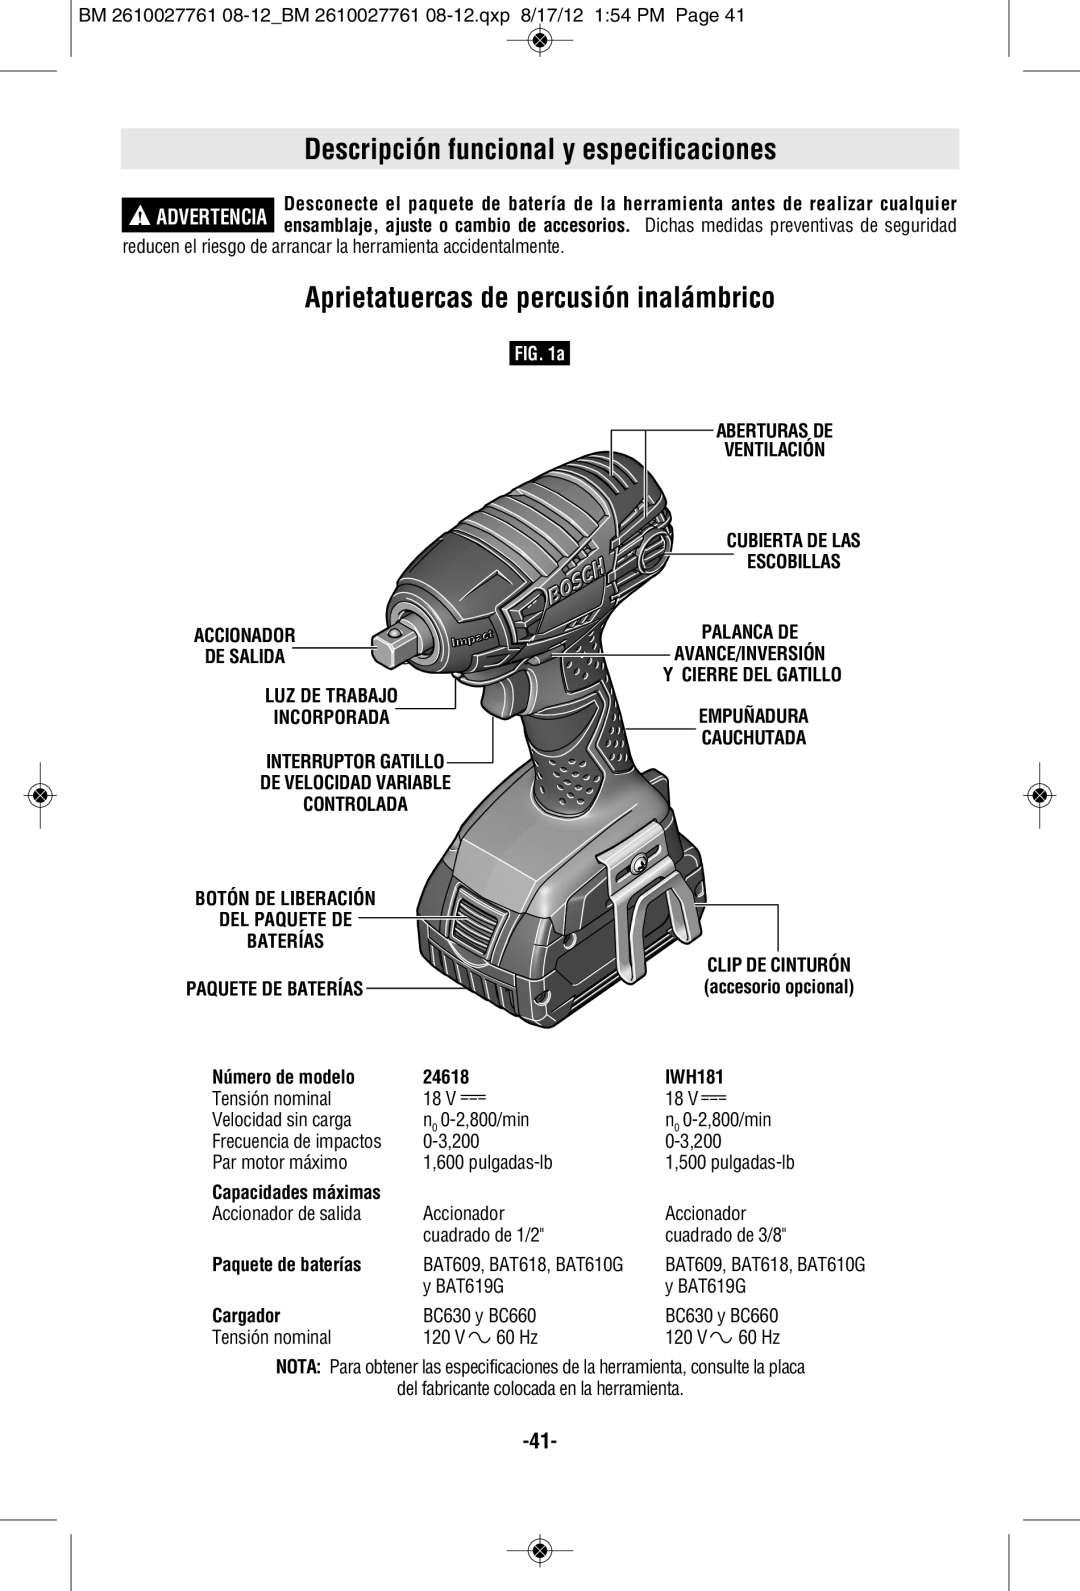 Bosch Power Tools 24618BN manual Aprietatuercas de percusión inalámbrico, Accionador, De Salida, Aberturas De, Ventilación 